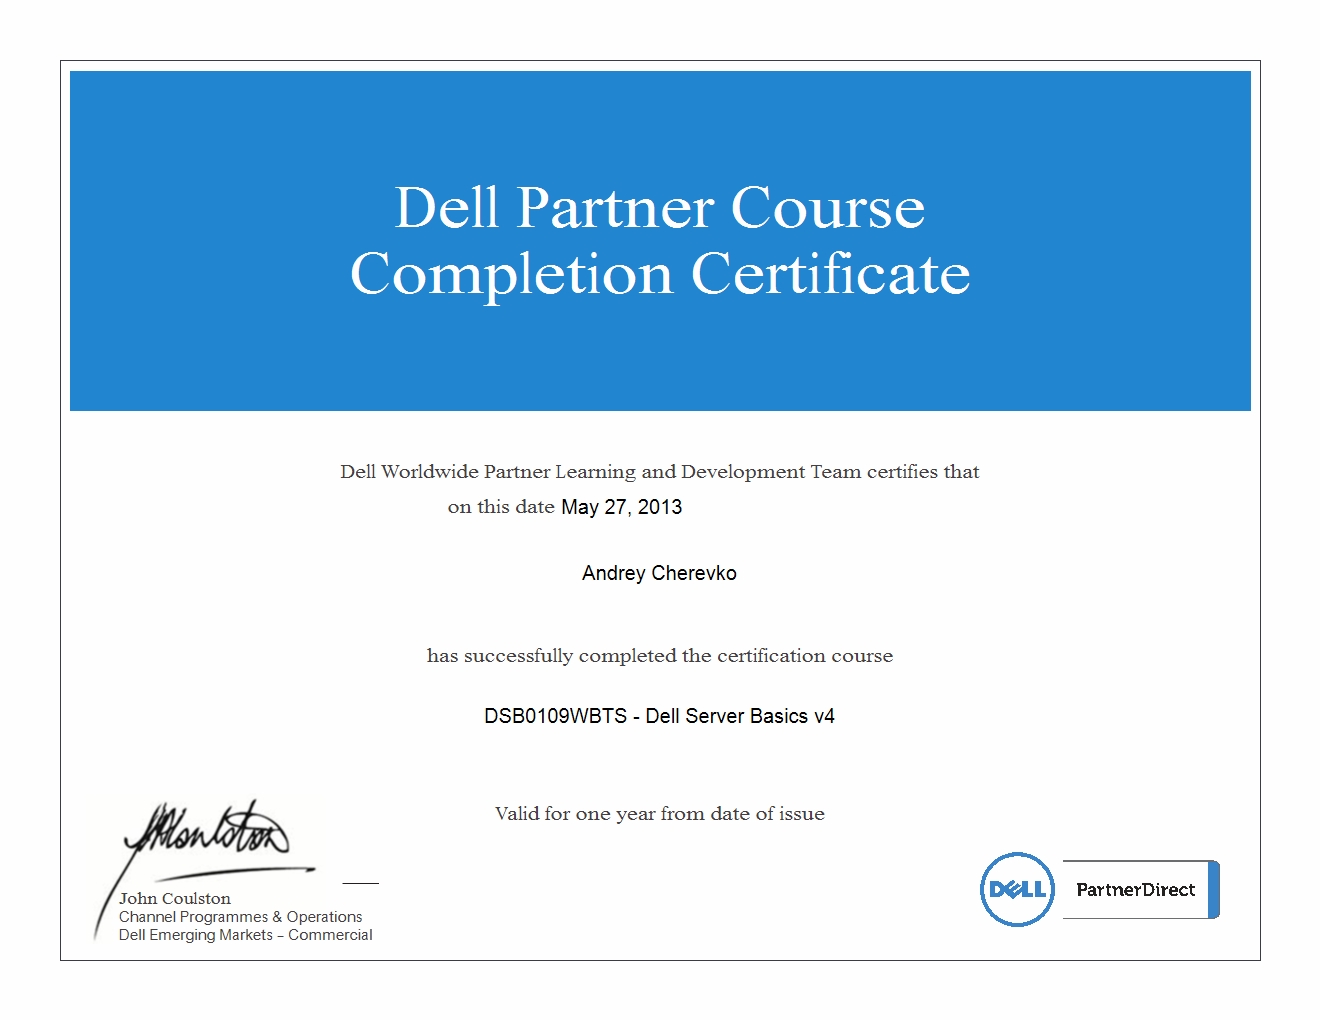 Сертификат Андрея Черевко от компании Dell